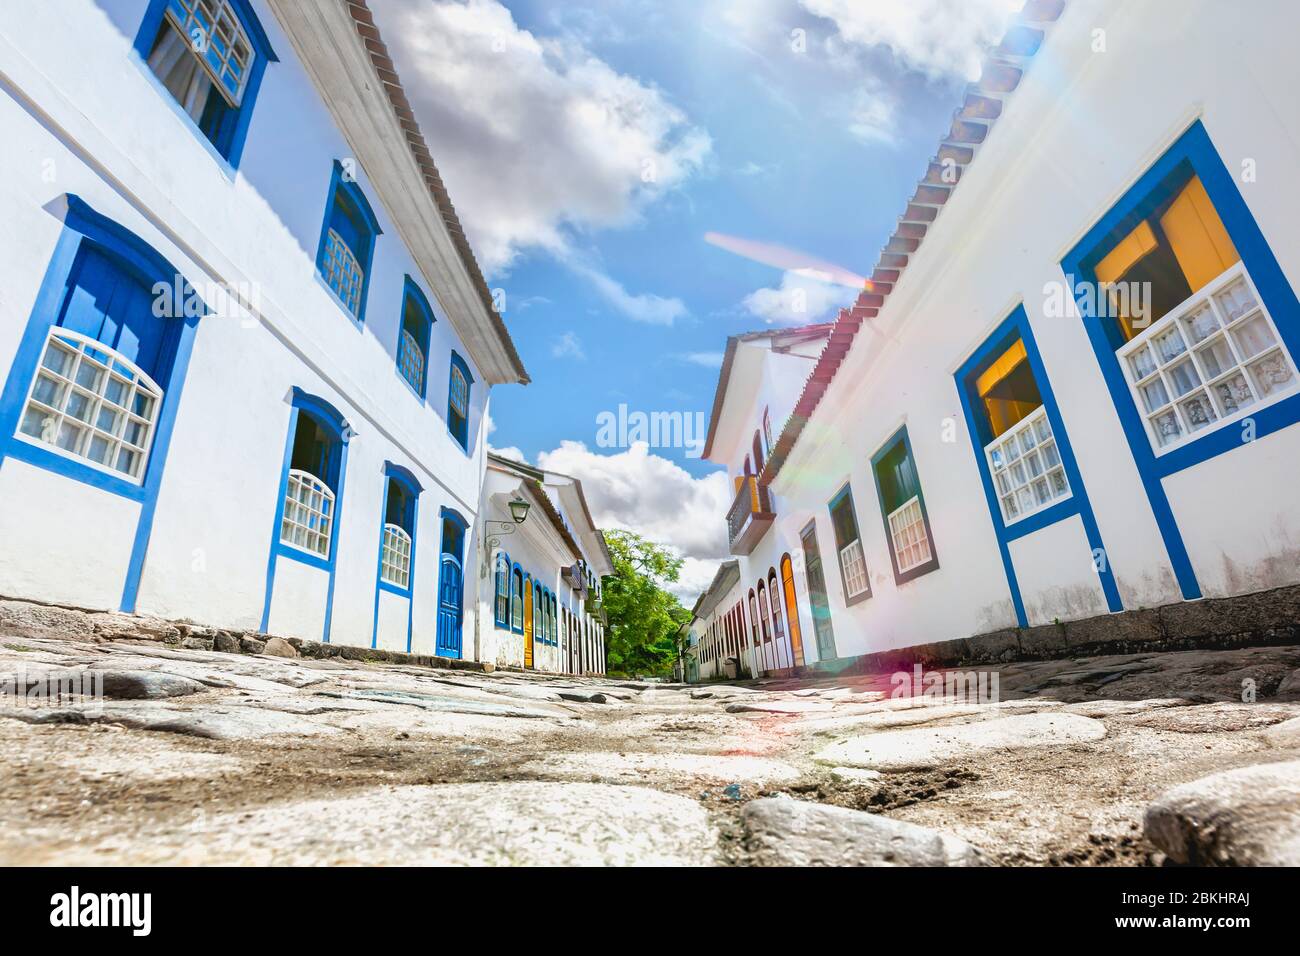 Street e portoghese vecchio case coloniali in centro storico a Paraty, stato di Rio de Janeiro, Brasile Foto Stock